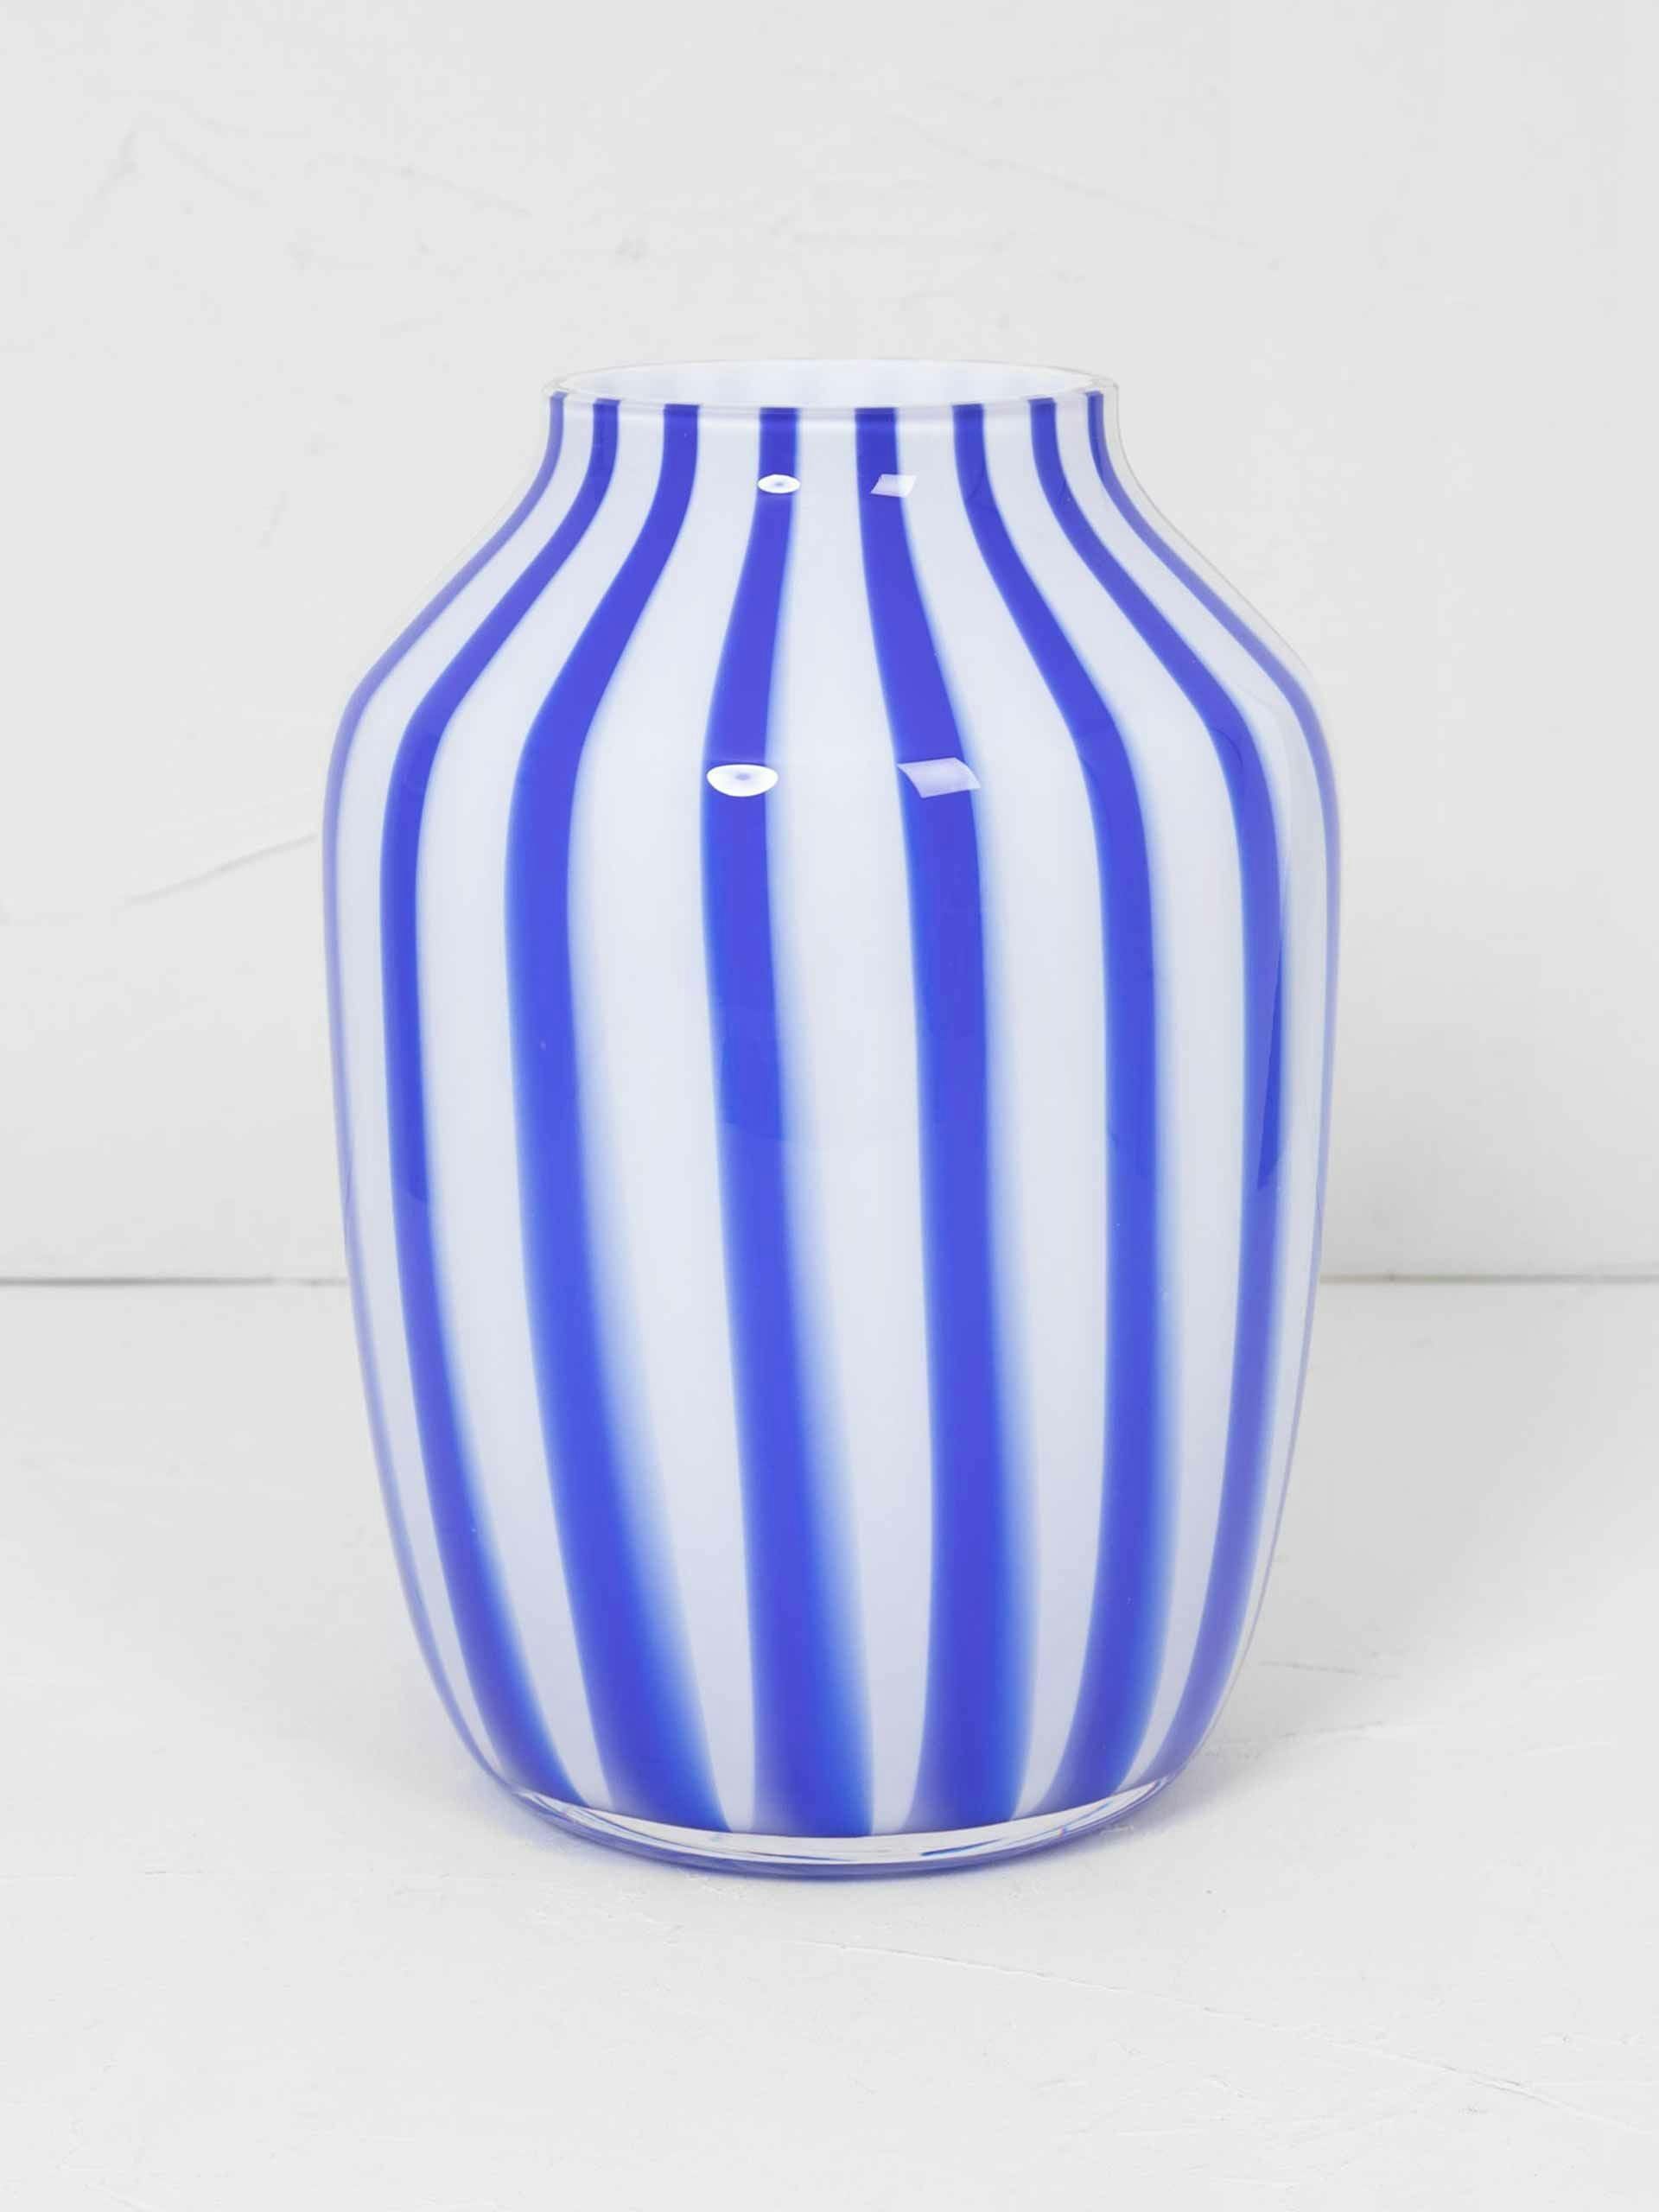 Blue and white stripe vase